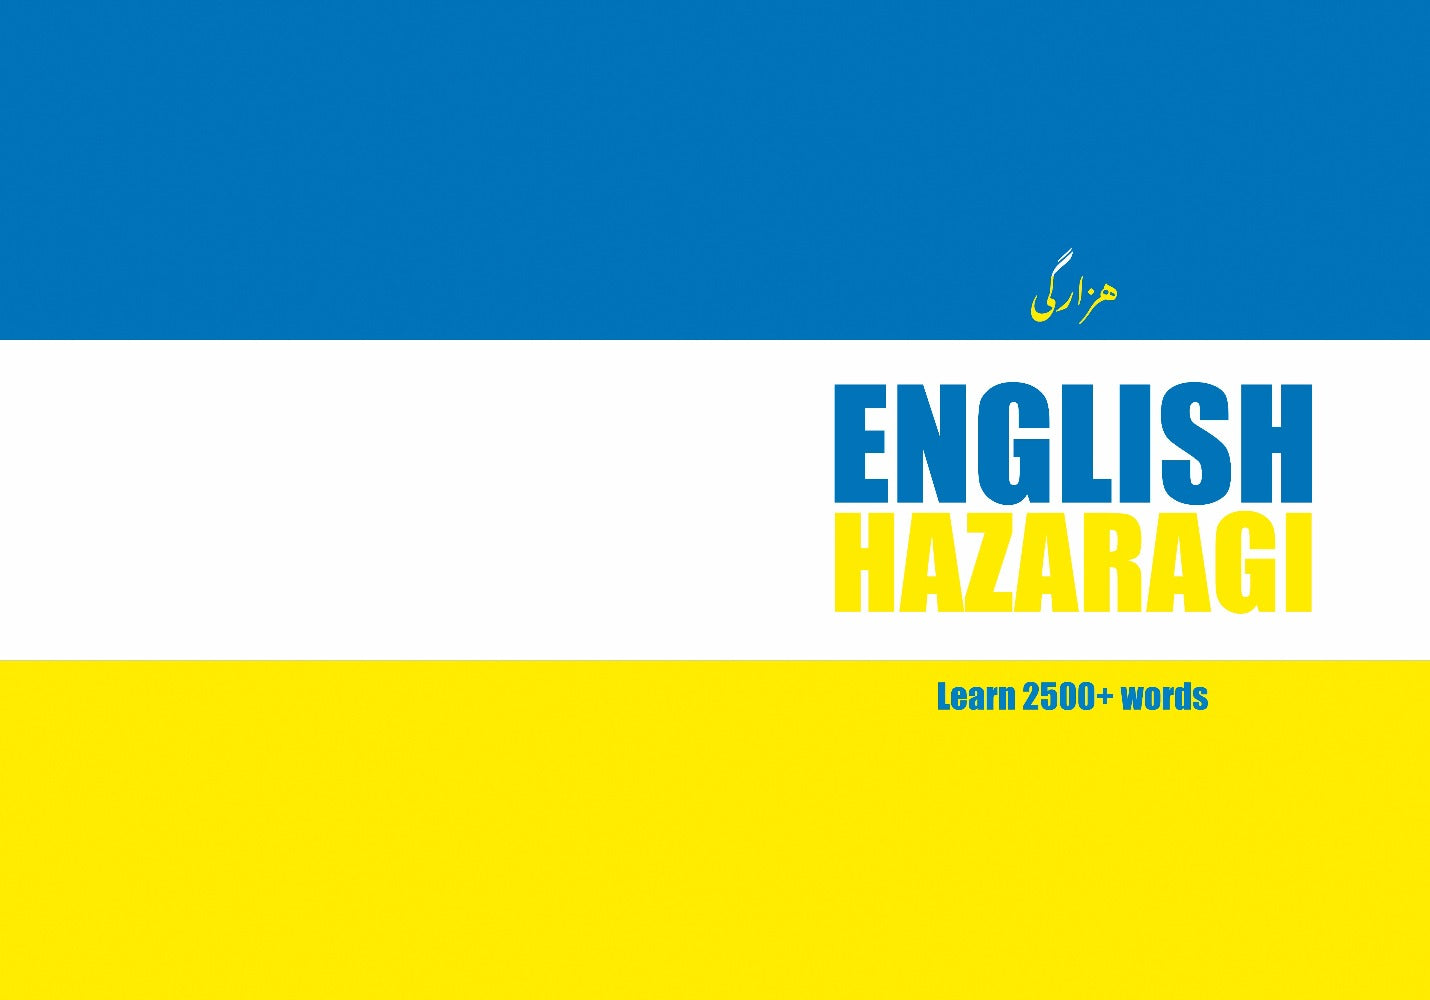 Hazaragi language learning notebook cover